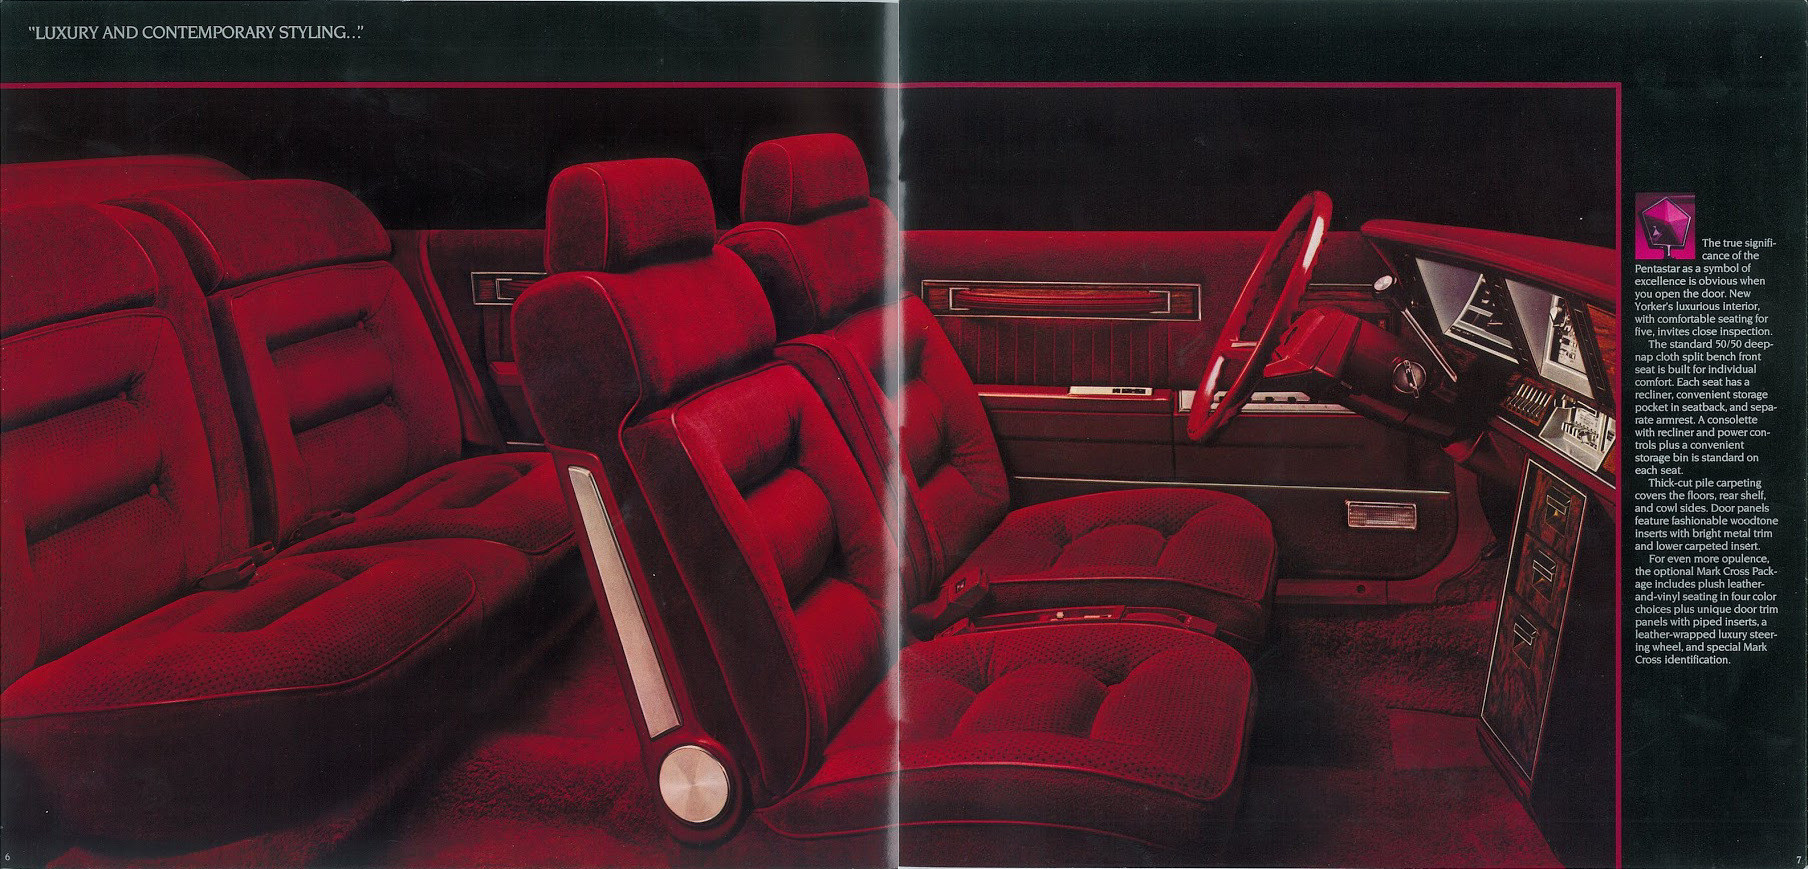 1983 Chrysler New Yorker-06-07